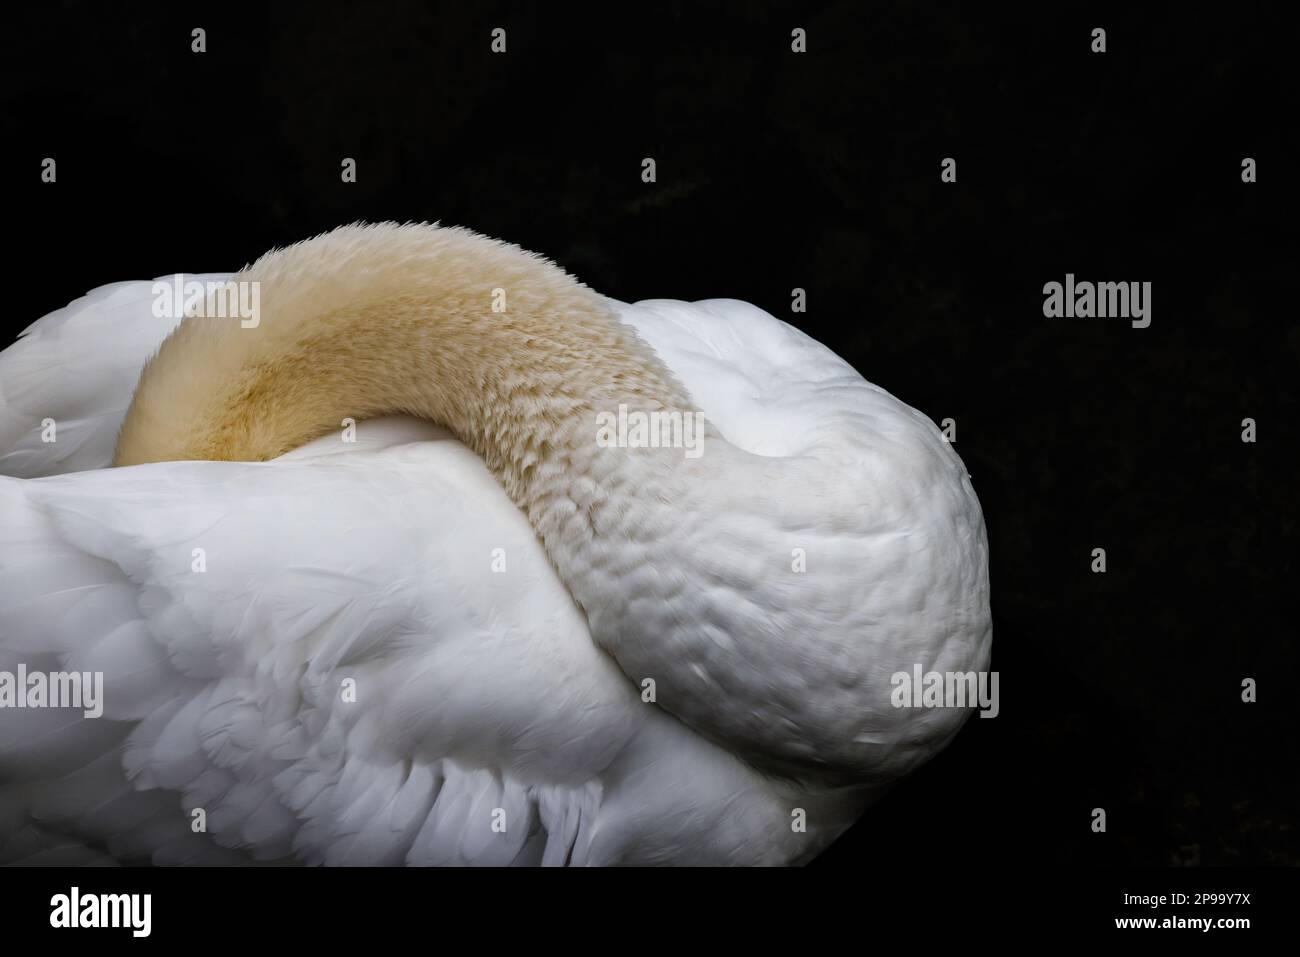 Fotografía de naturaleza espectacular con un animal como ave. Un cisne blanco y su plumaje. Stock Photo